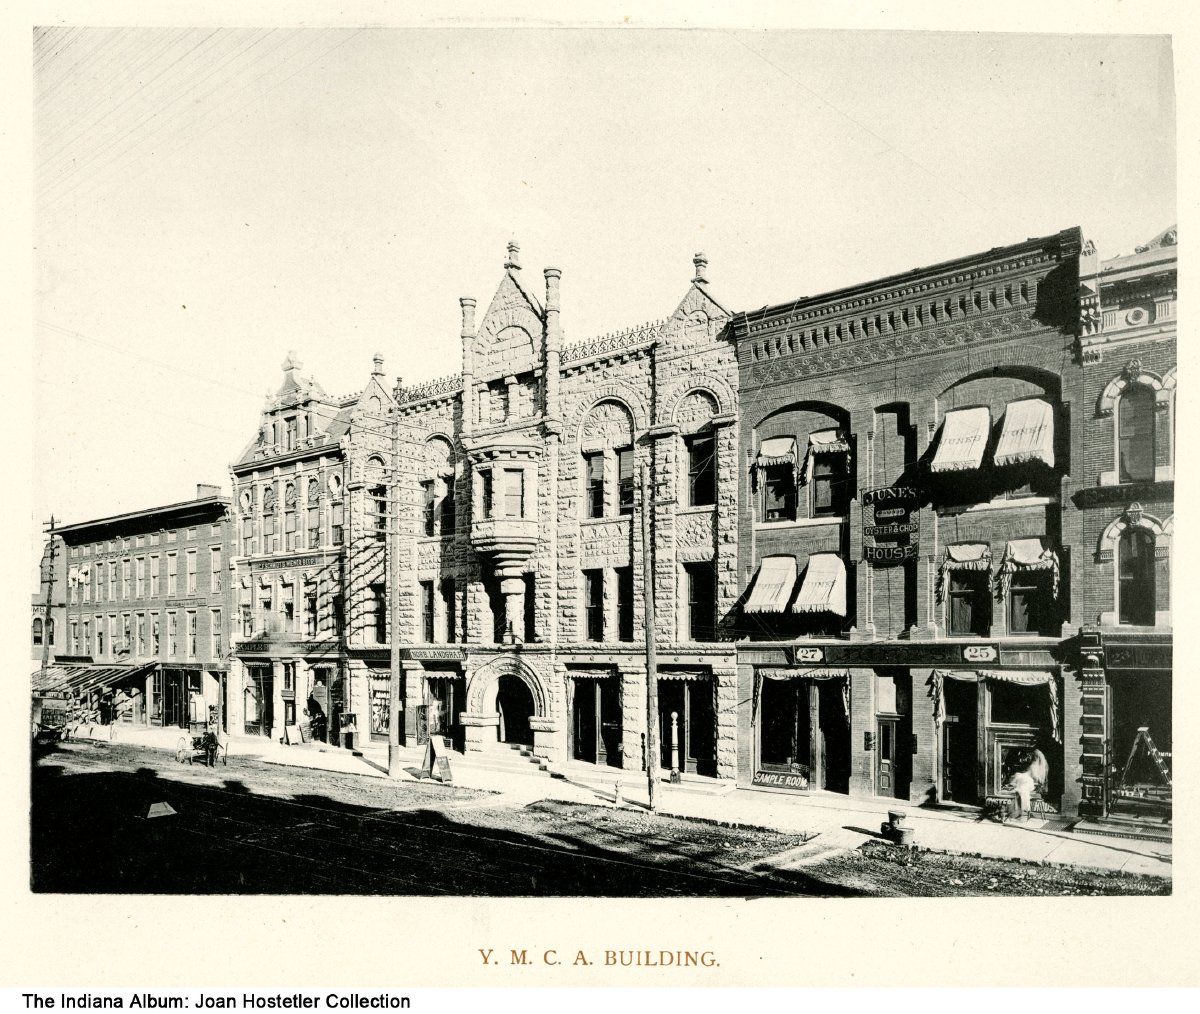 Y. M. C. A. Building, ca. 1888